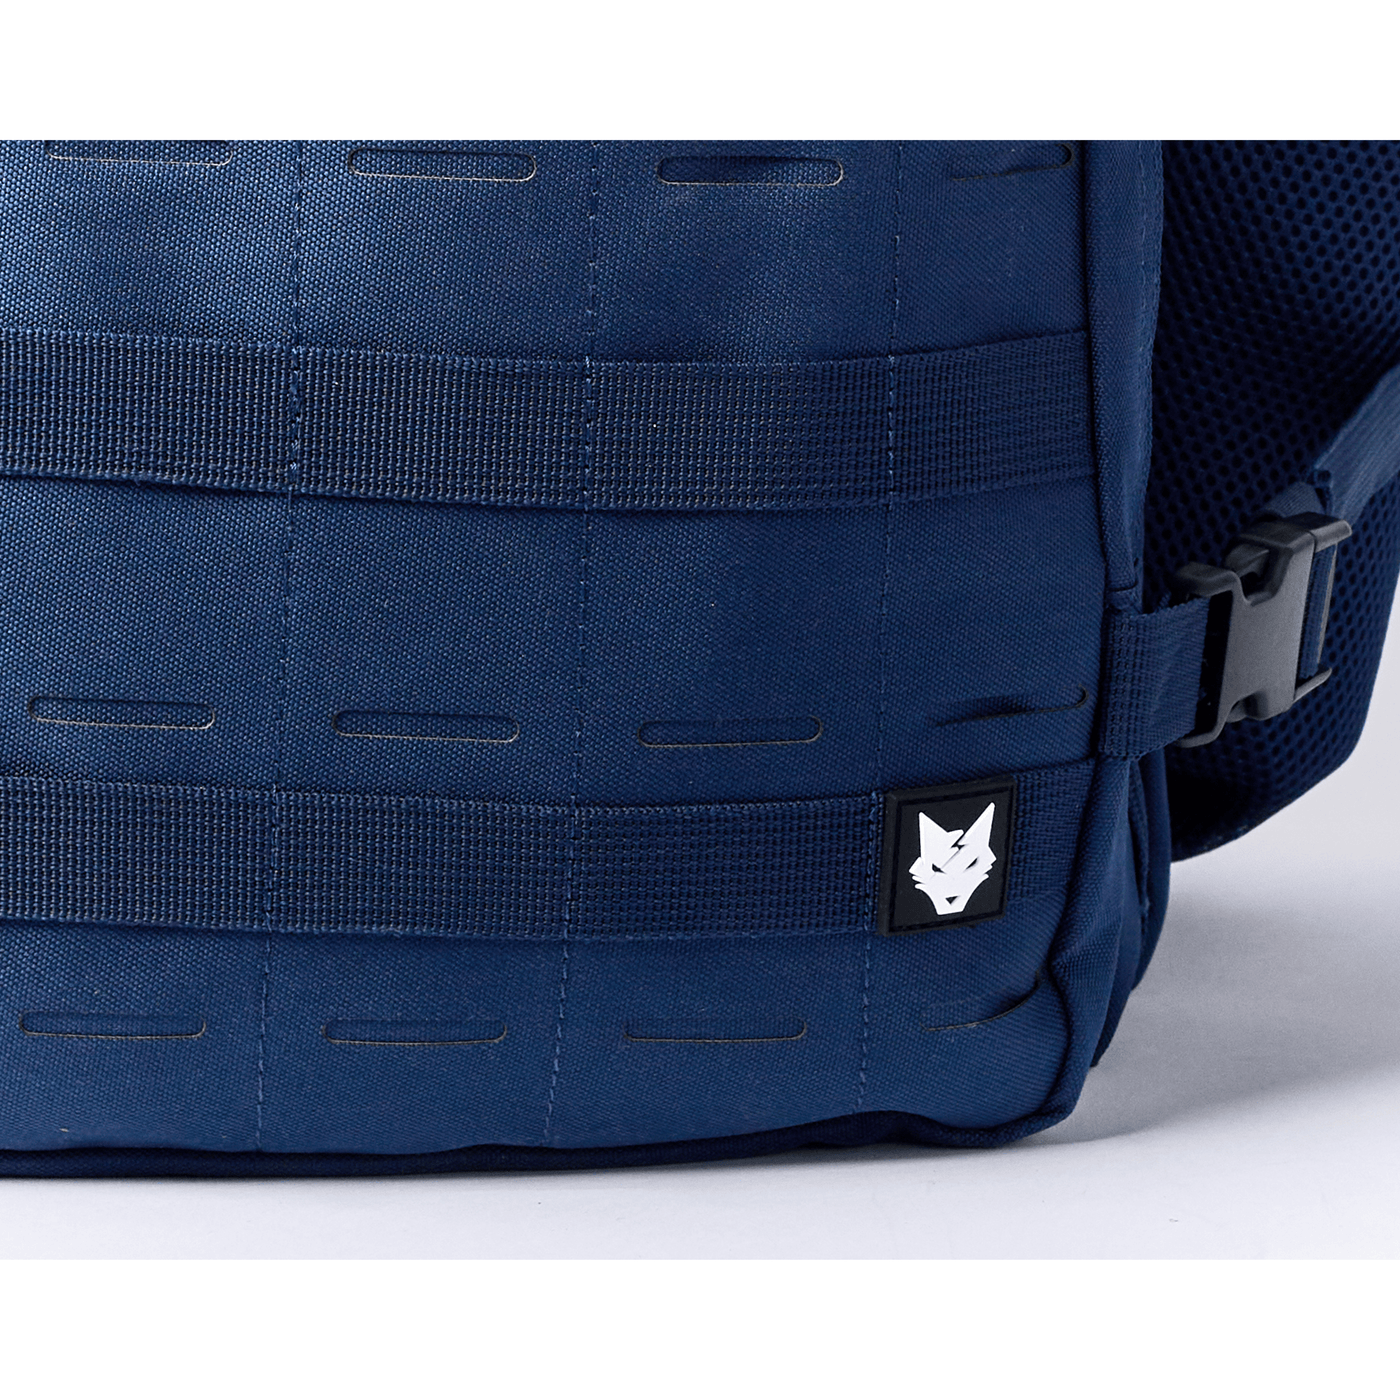 Gen 3 Blue 45L Backpack